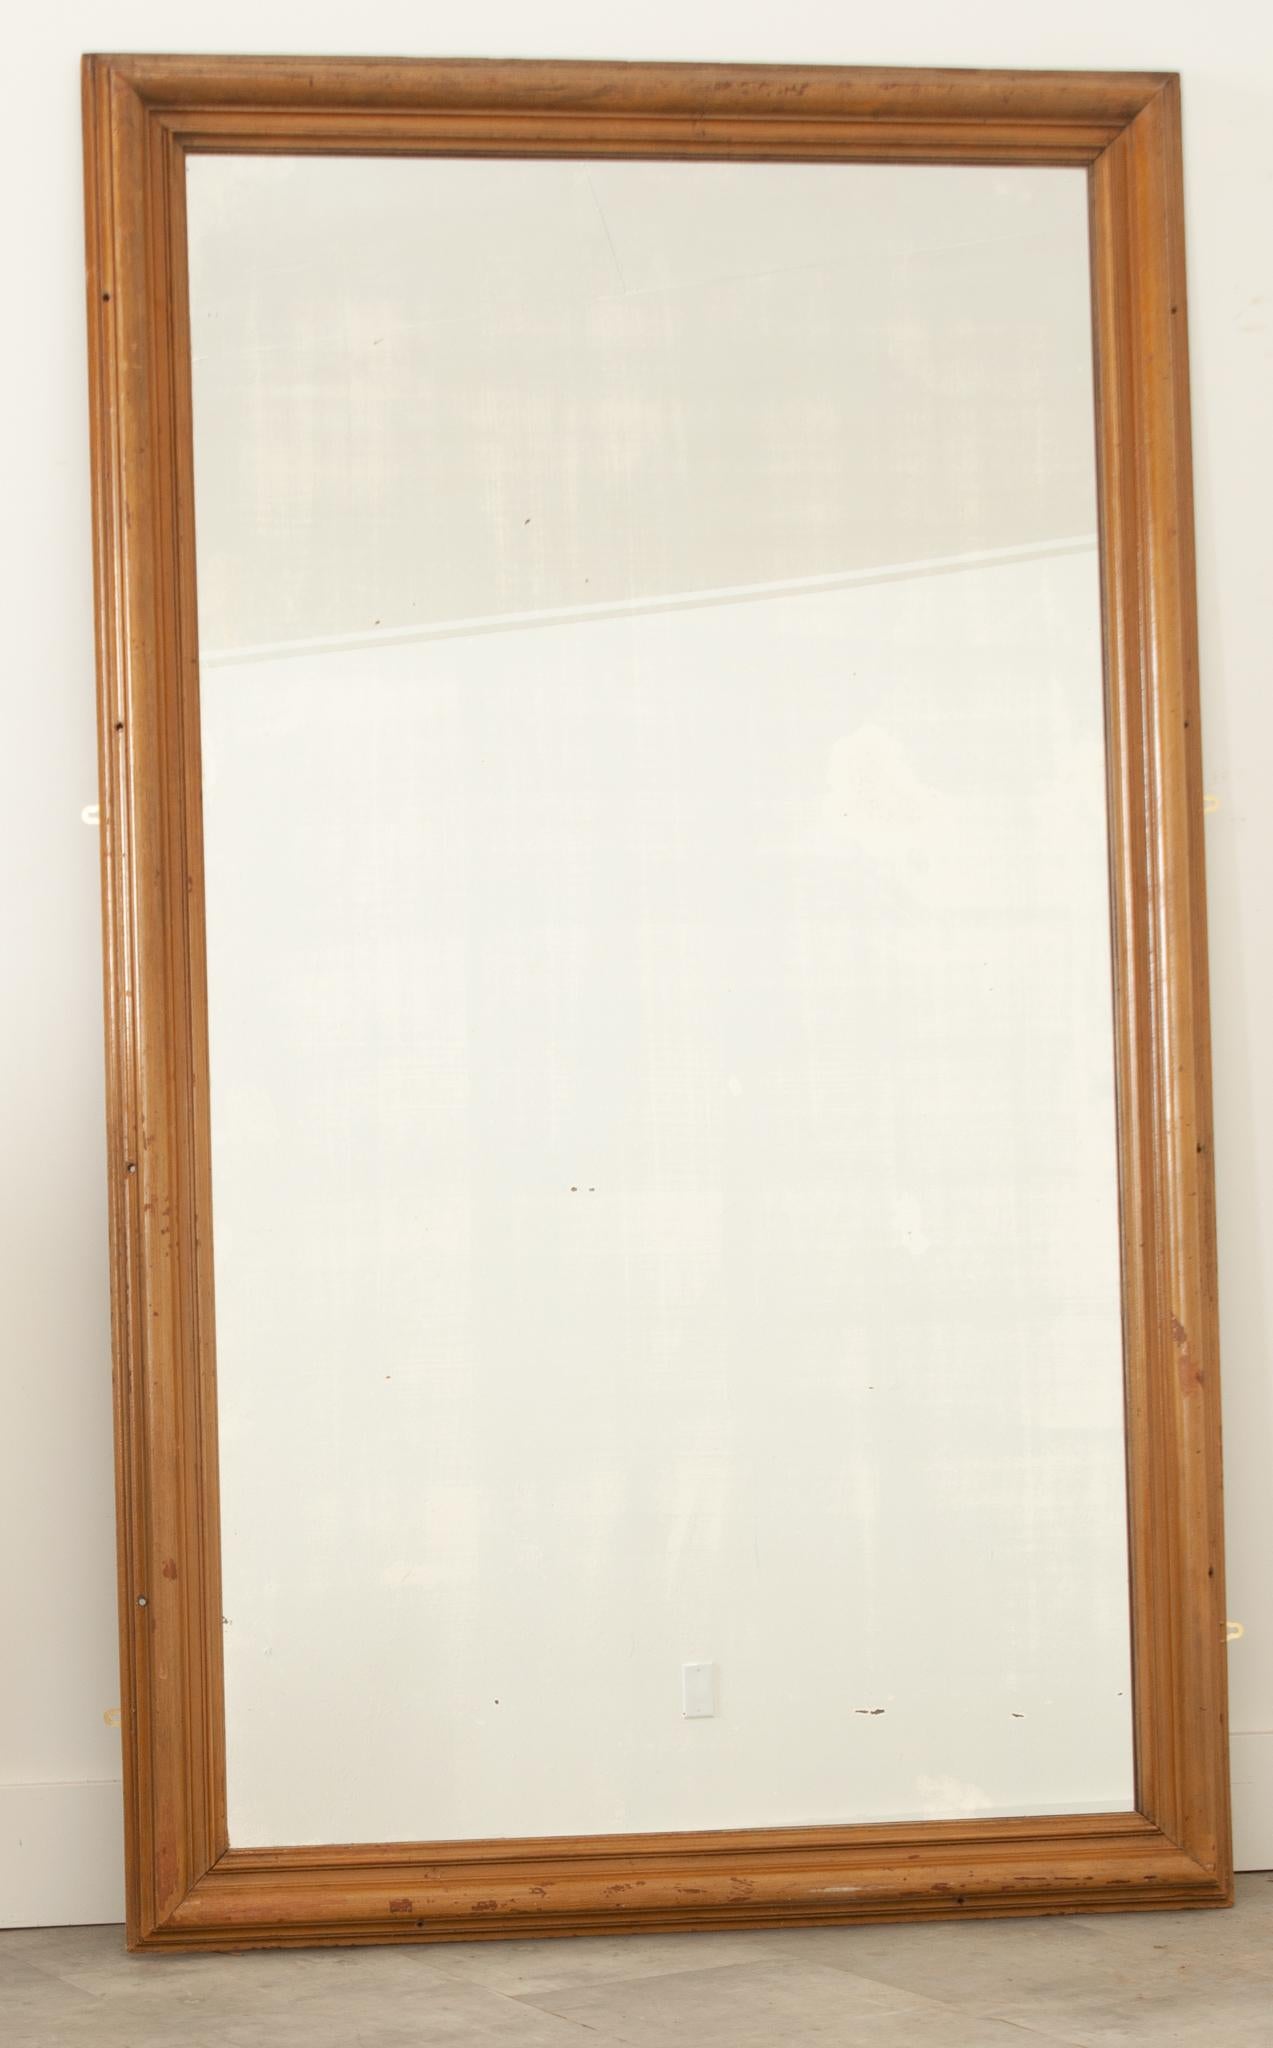 Ein massiver Spiegel, der von einem Rahmen aus Formholz mit abgenutzter Oberfläche getragen wird. Kleine, gleichmäßige Löcher am Rahmen zeigen an, wo er einst zur Unterstützung in eine Wand geschraubt wurde. Die originale Quecksilberspiegelplatte